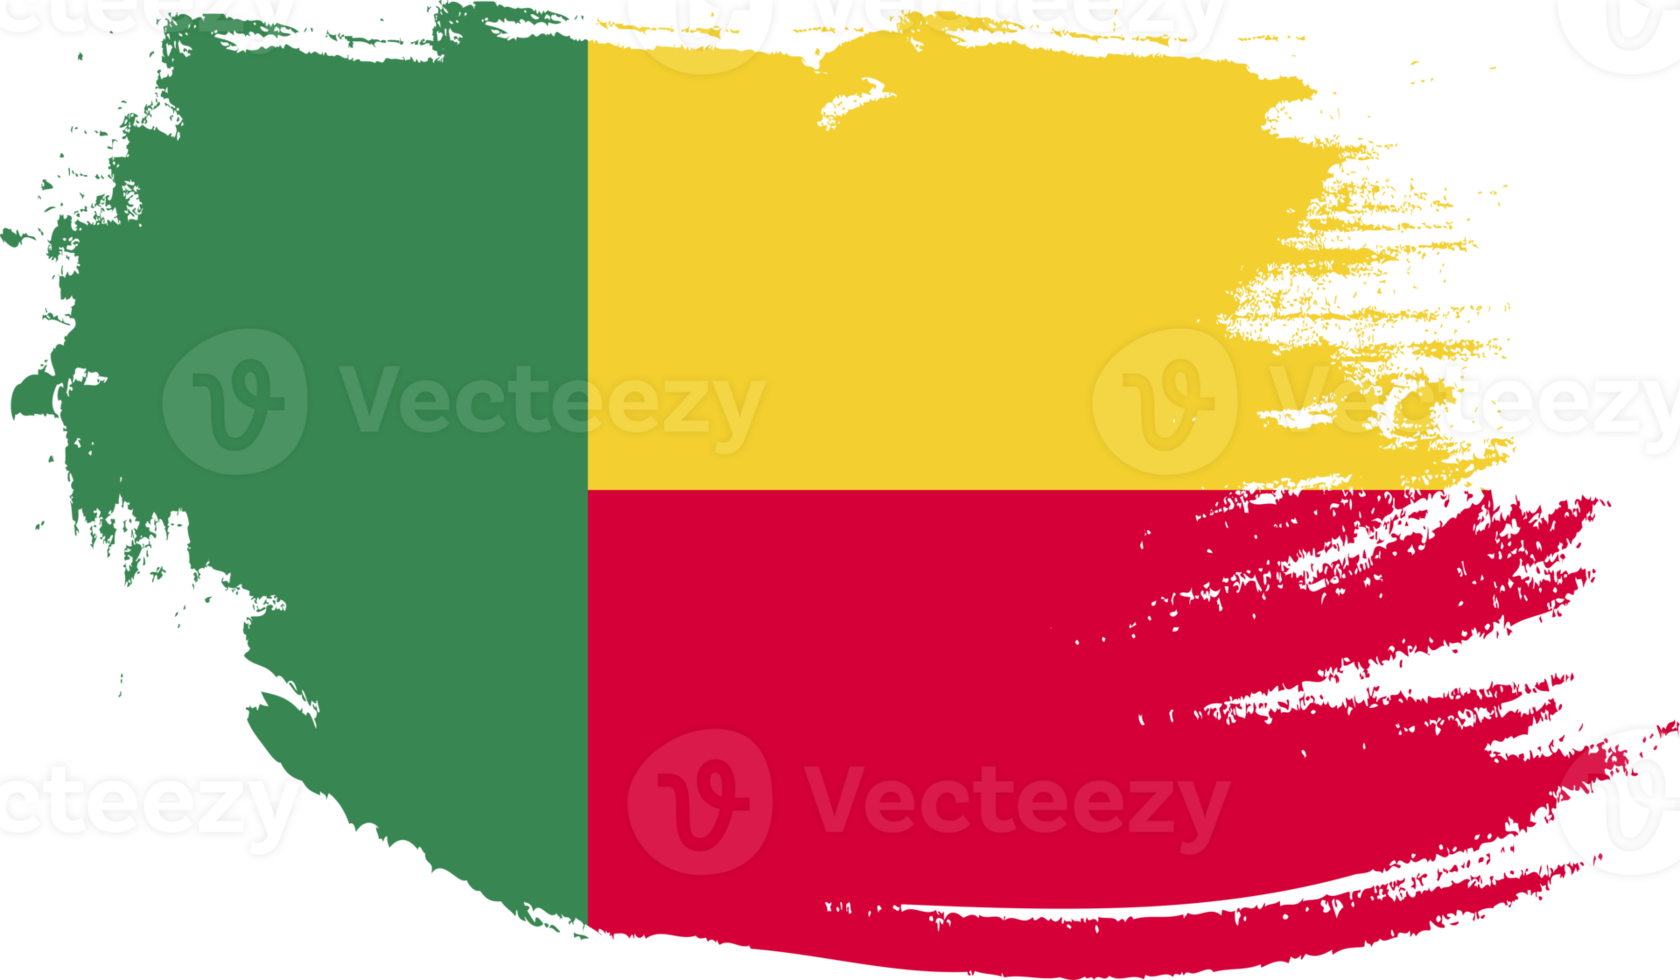 bandiera del Benin con texture grunge png